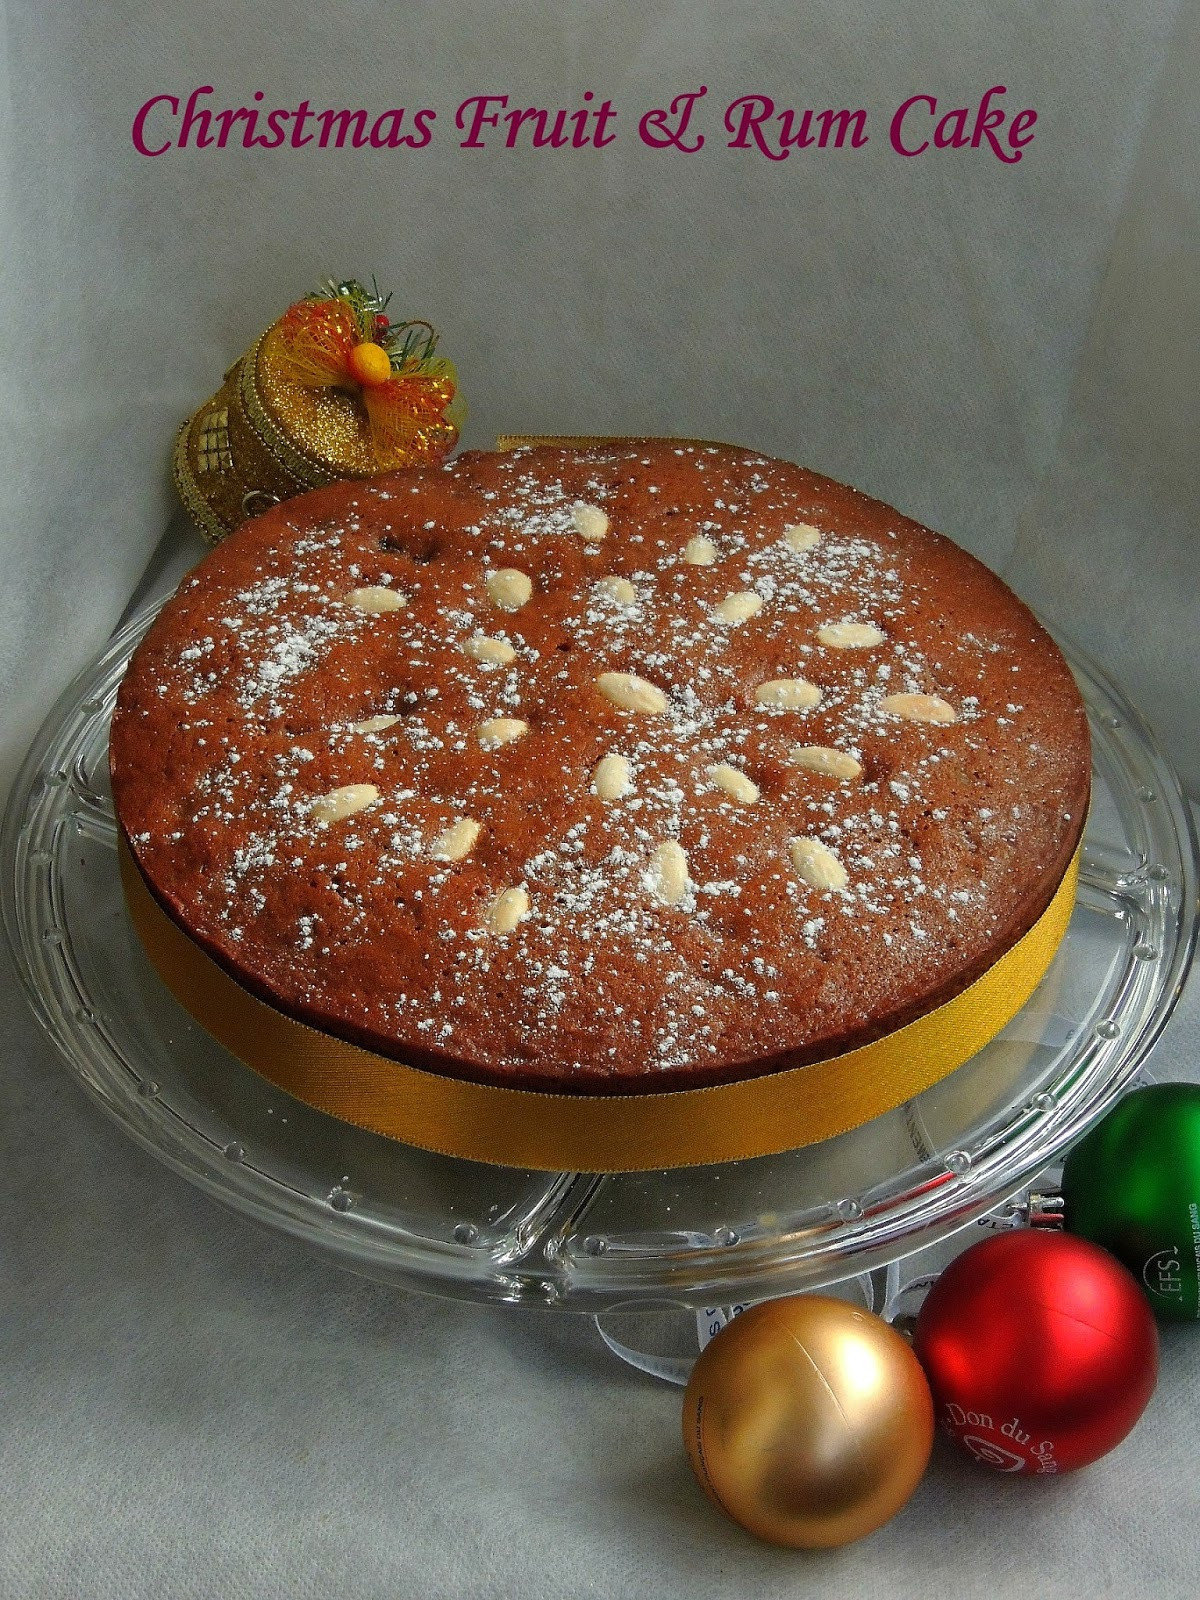 Christmas Fruit Cake Recipe With Rum
 Priya s Versatile Recipes Christmas Fruit & Rum Cake